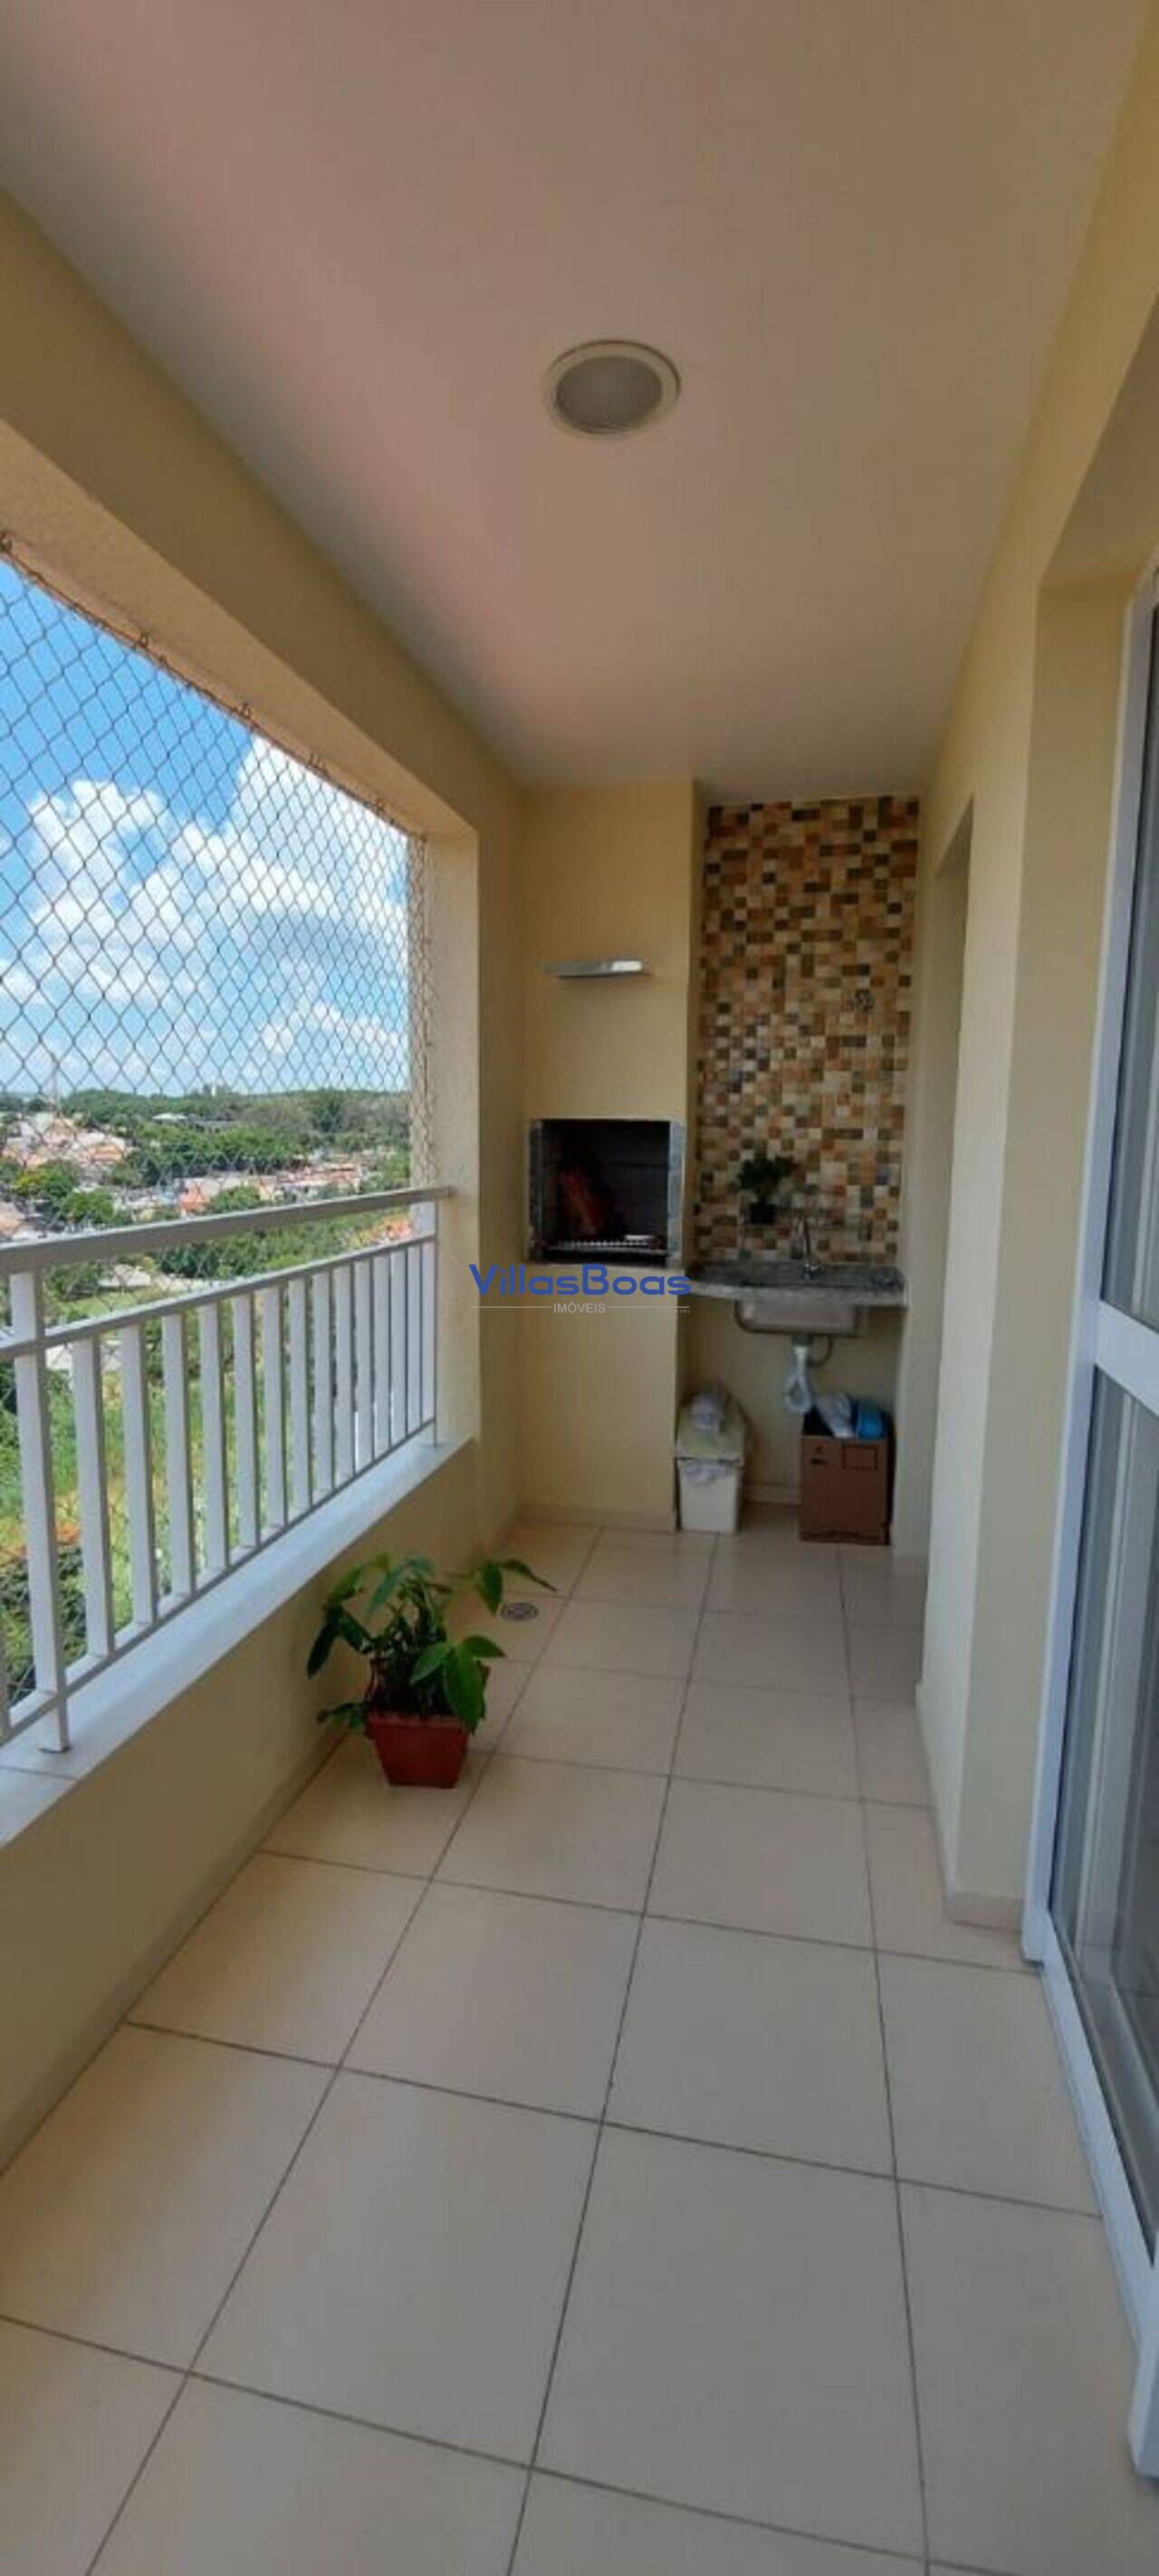 Apartamento Jardim Souto, São José dos Campos - SP